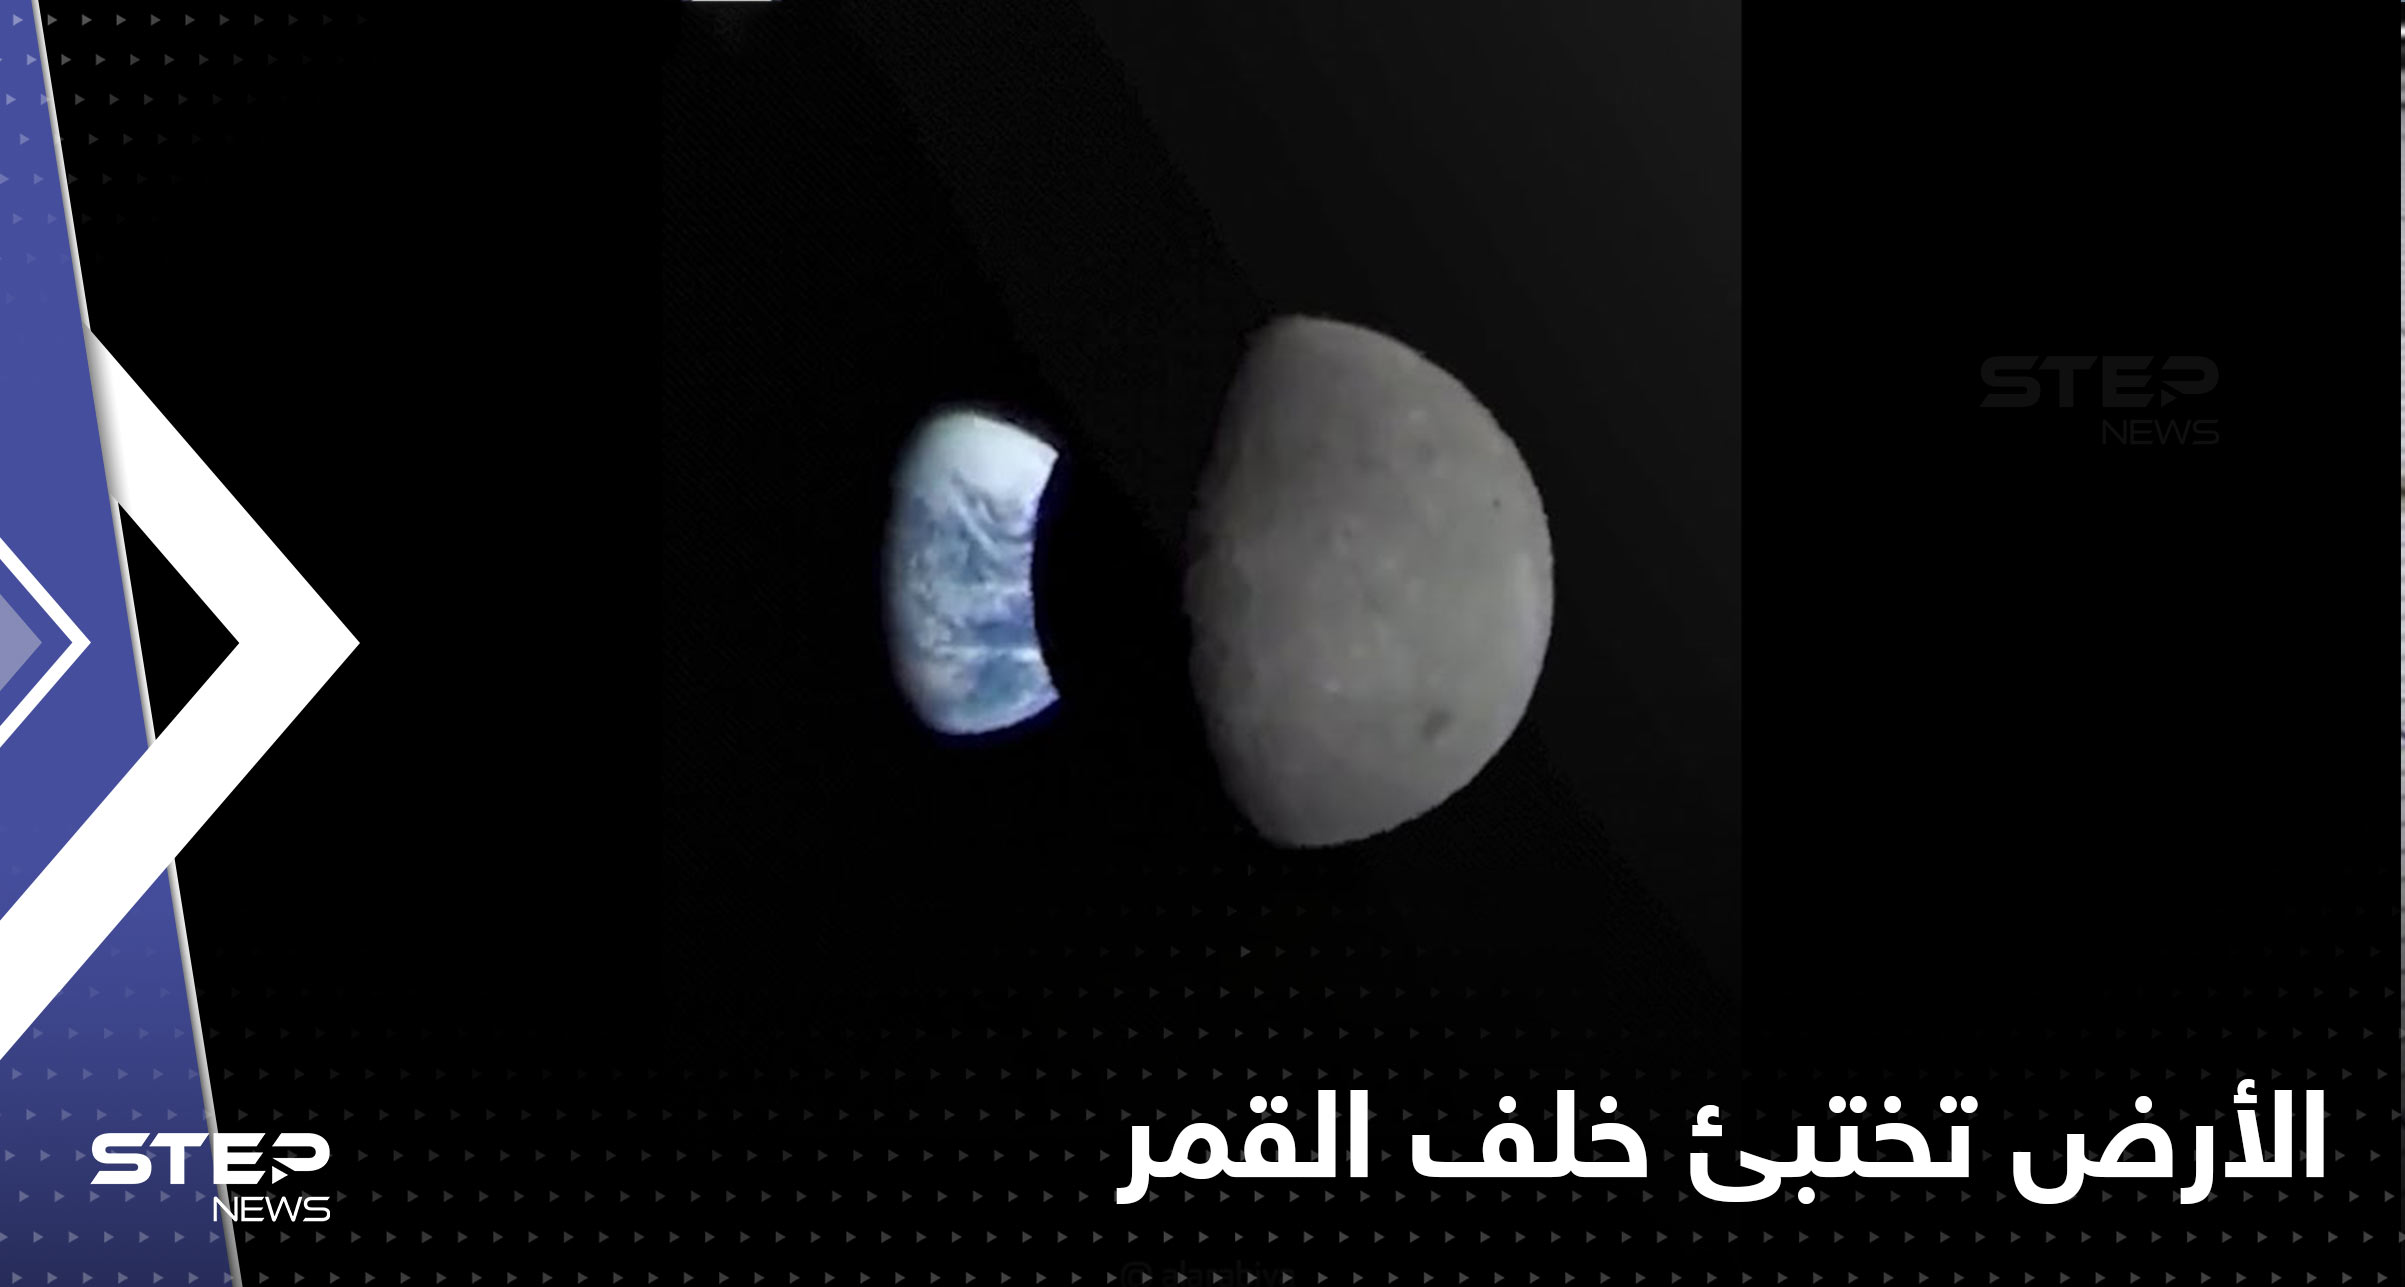 شاهد|| فيديو يوثق لحظة اختباء الأرض خلف القمر